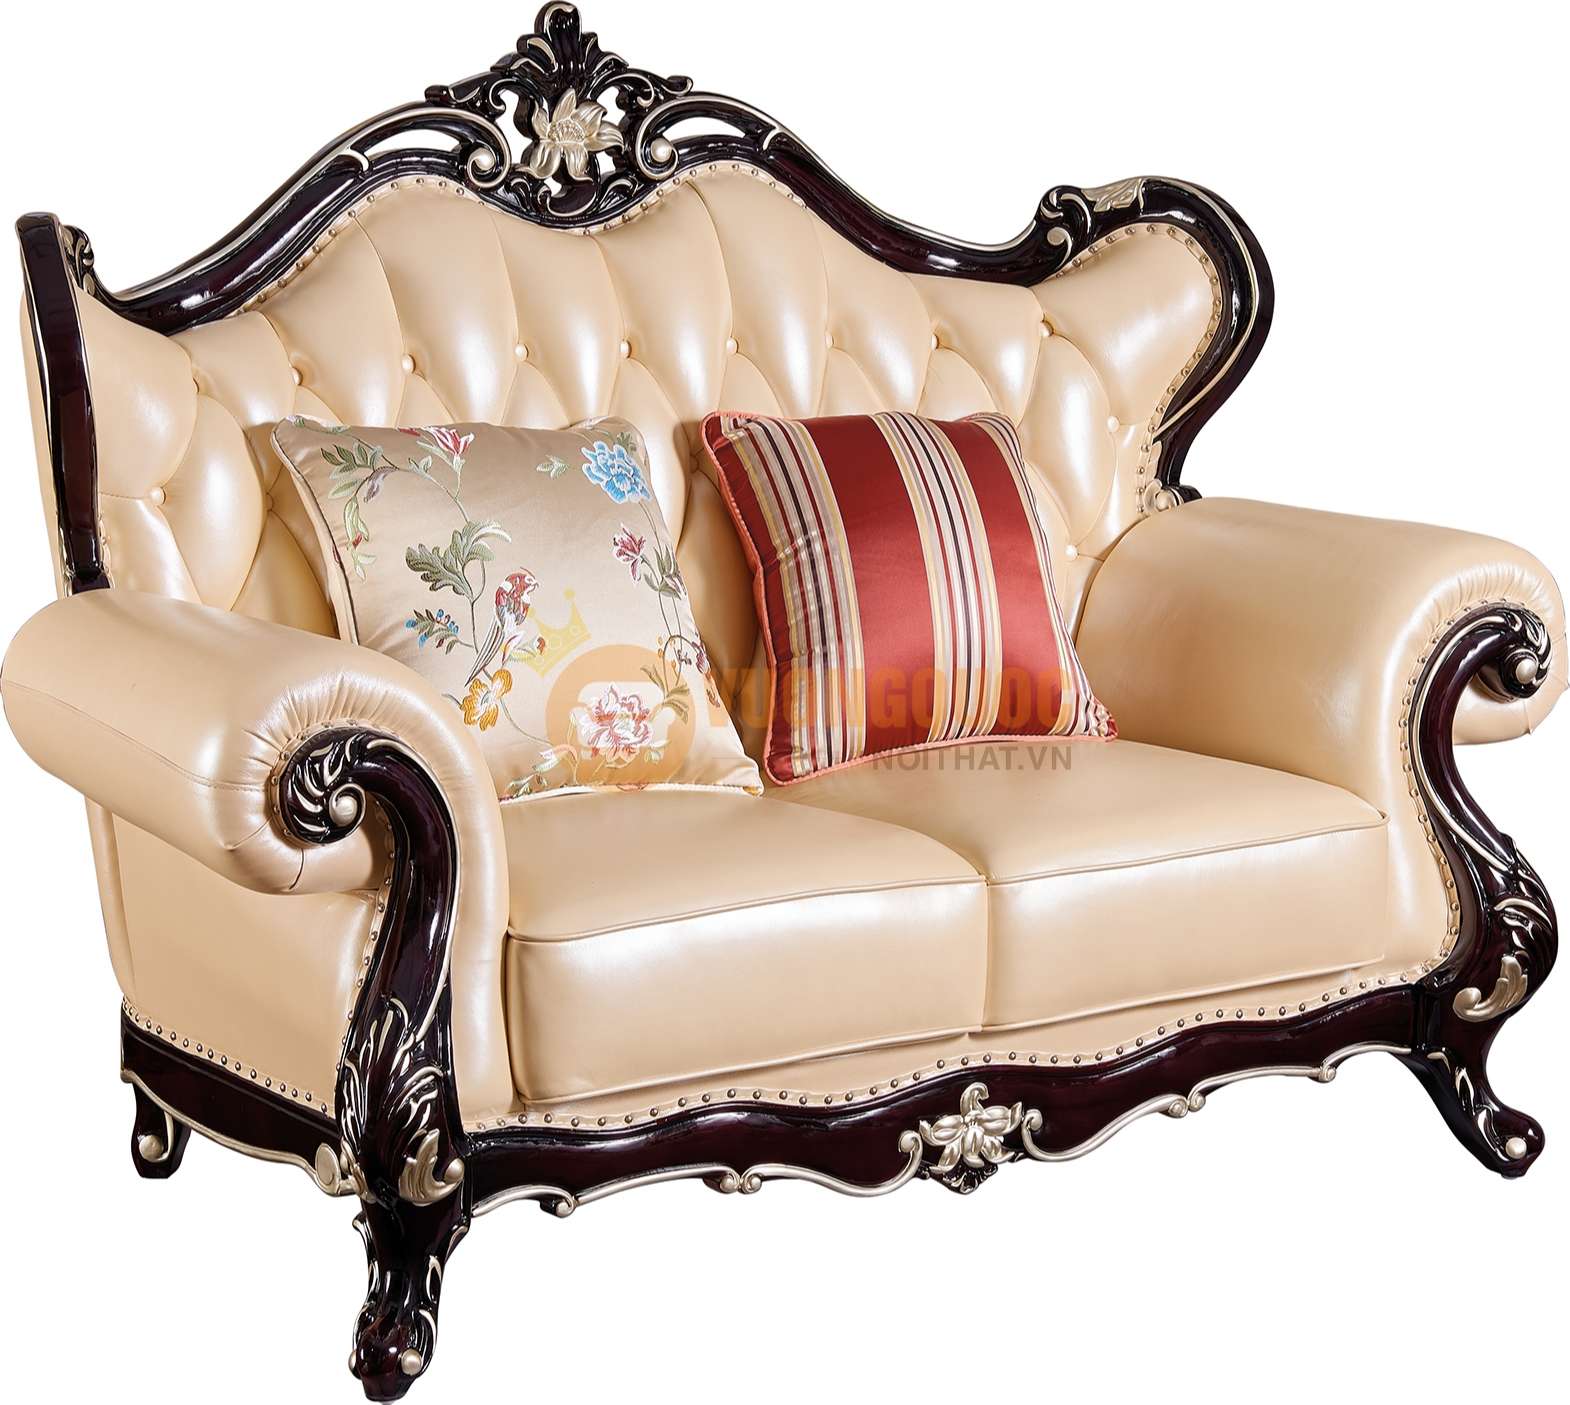 Bộ sofa phòng khách tân cổ điển cao cấp JVN6901AS sofa đôi